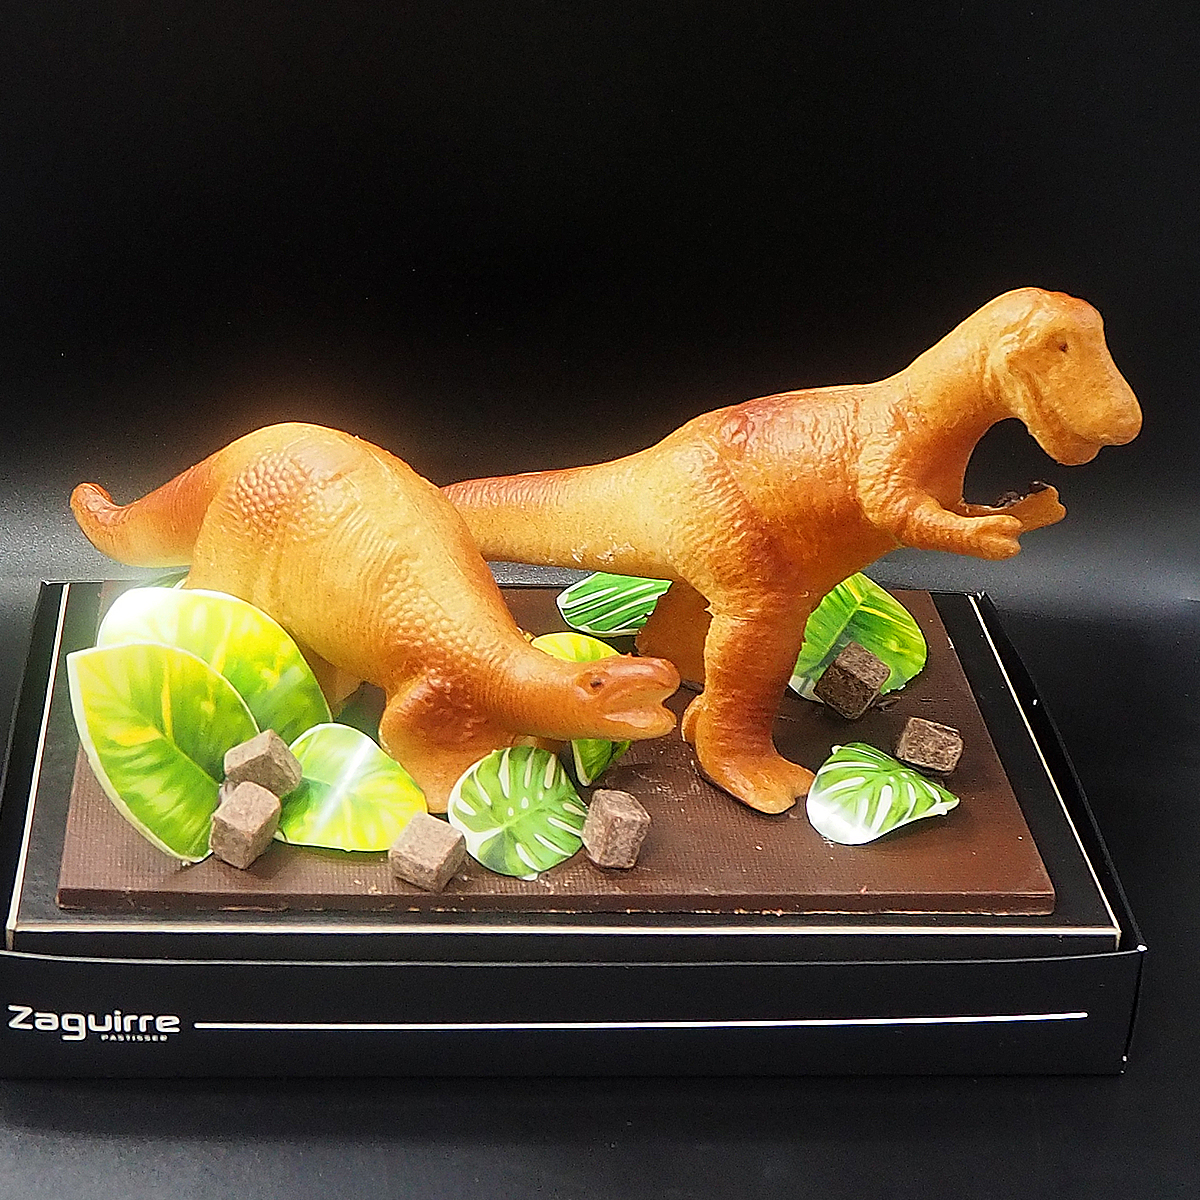 Mona de Pasqua de xocolata amb forma de dinosaure elaborada per Zaguirre Pastisser.